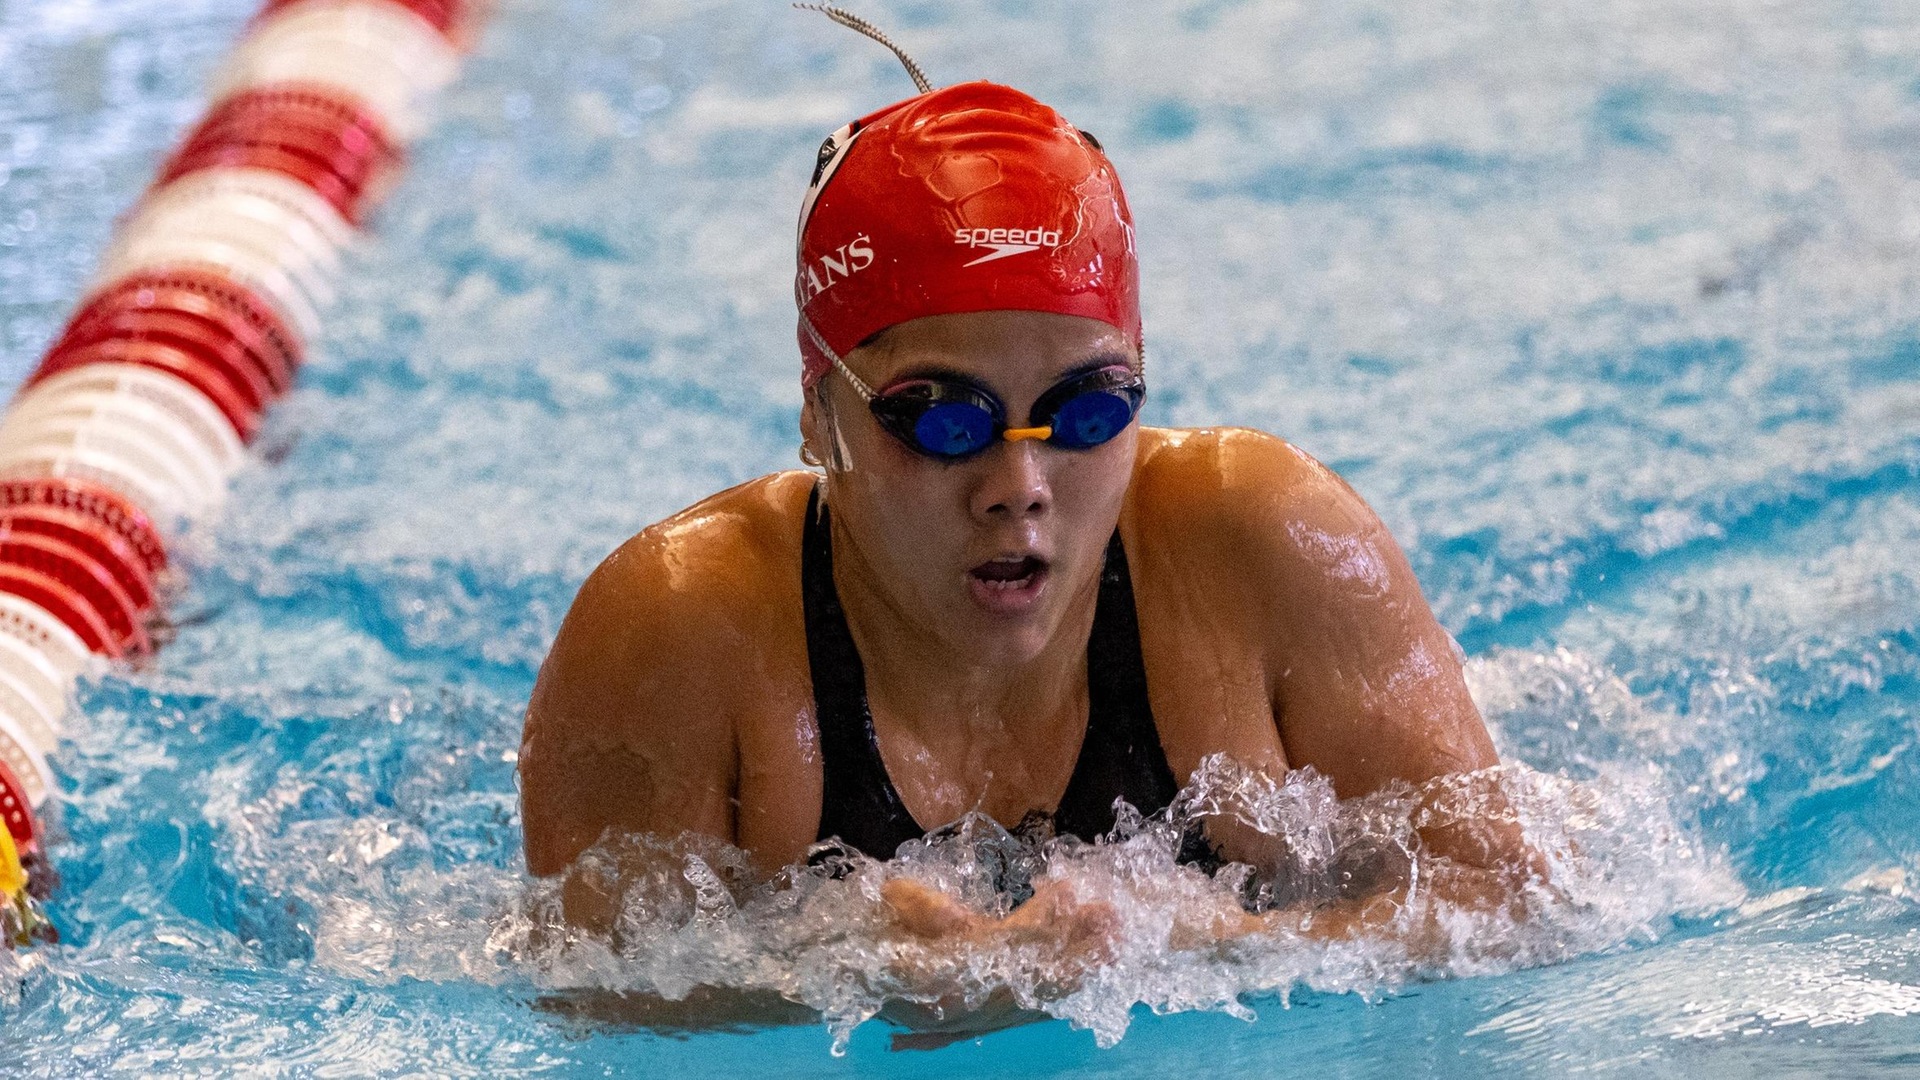 women's swimmer doing breaststroke event